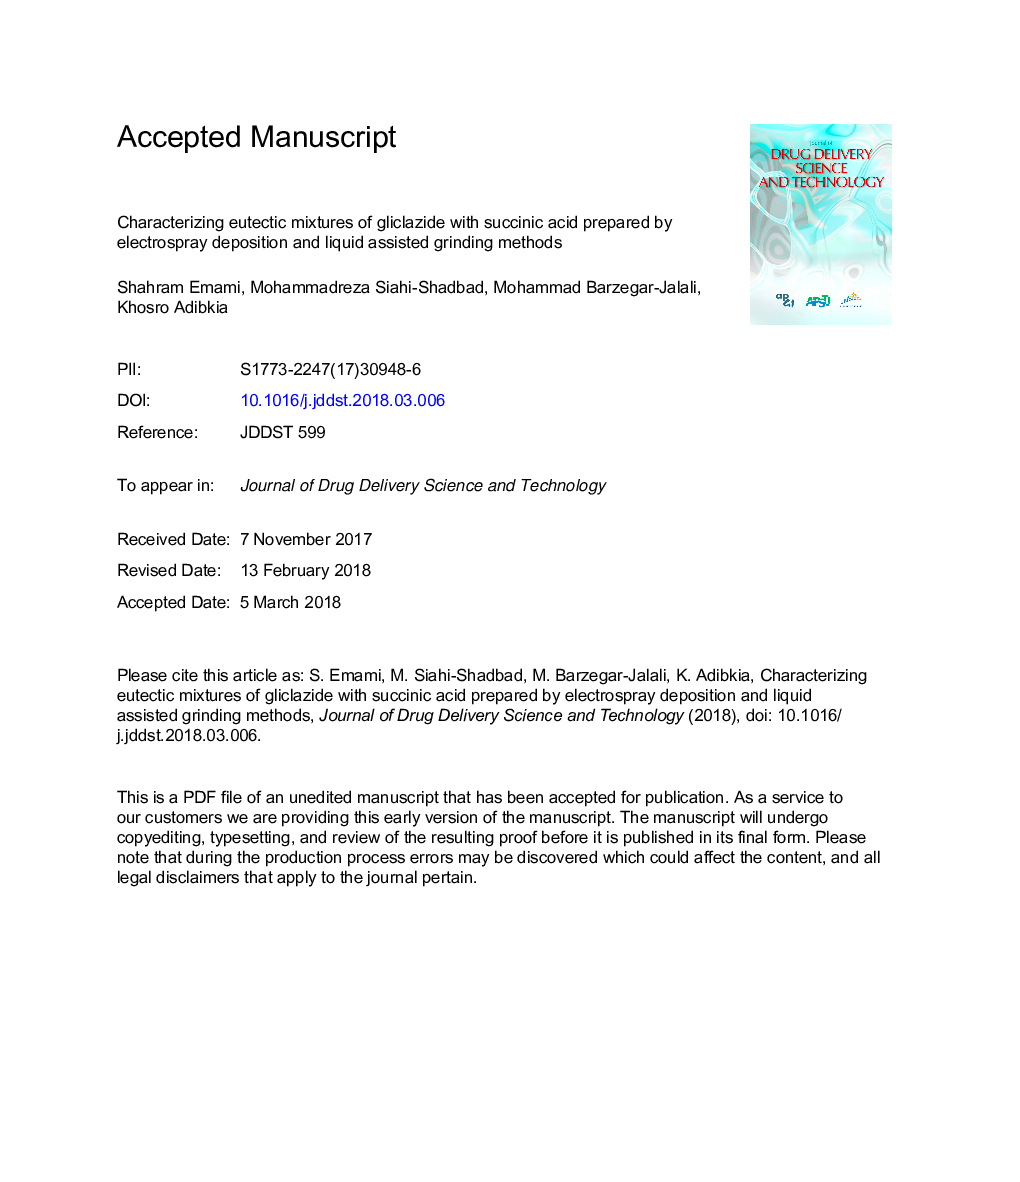 تشخیص ترکیبات ائوتکتیک گلیکلاسید با اسید بنسینیک تهیه شده توسط رسوب الکترو اسپری و روش های آسیاب کردن مایع 